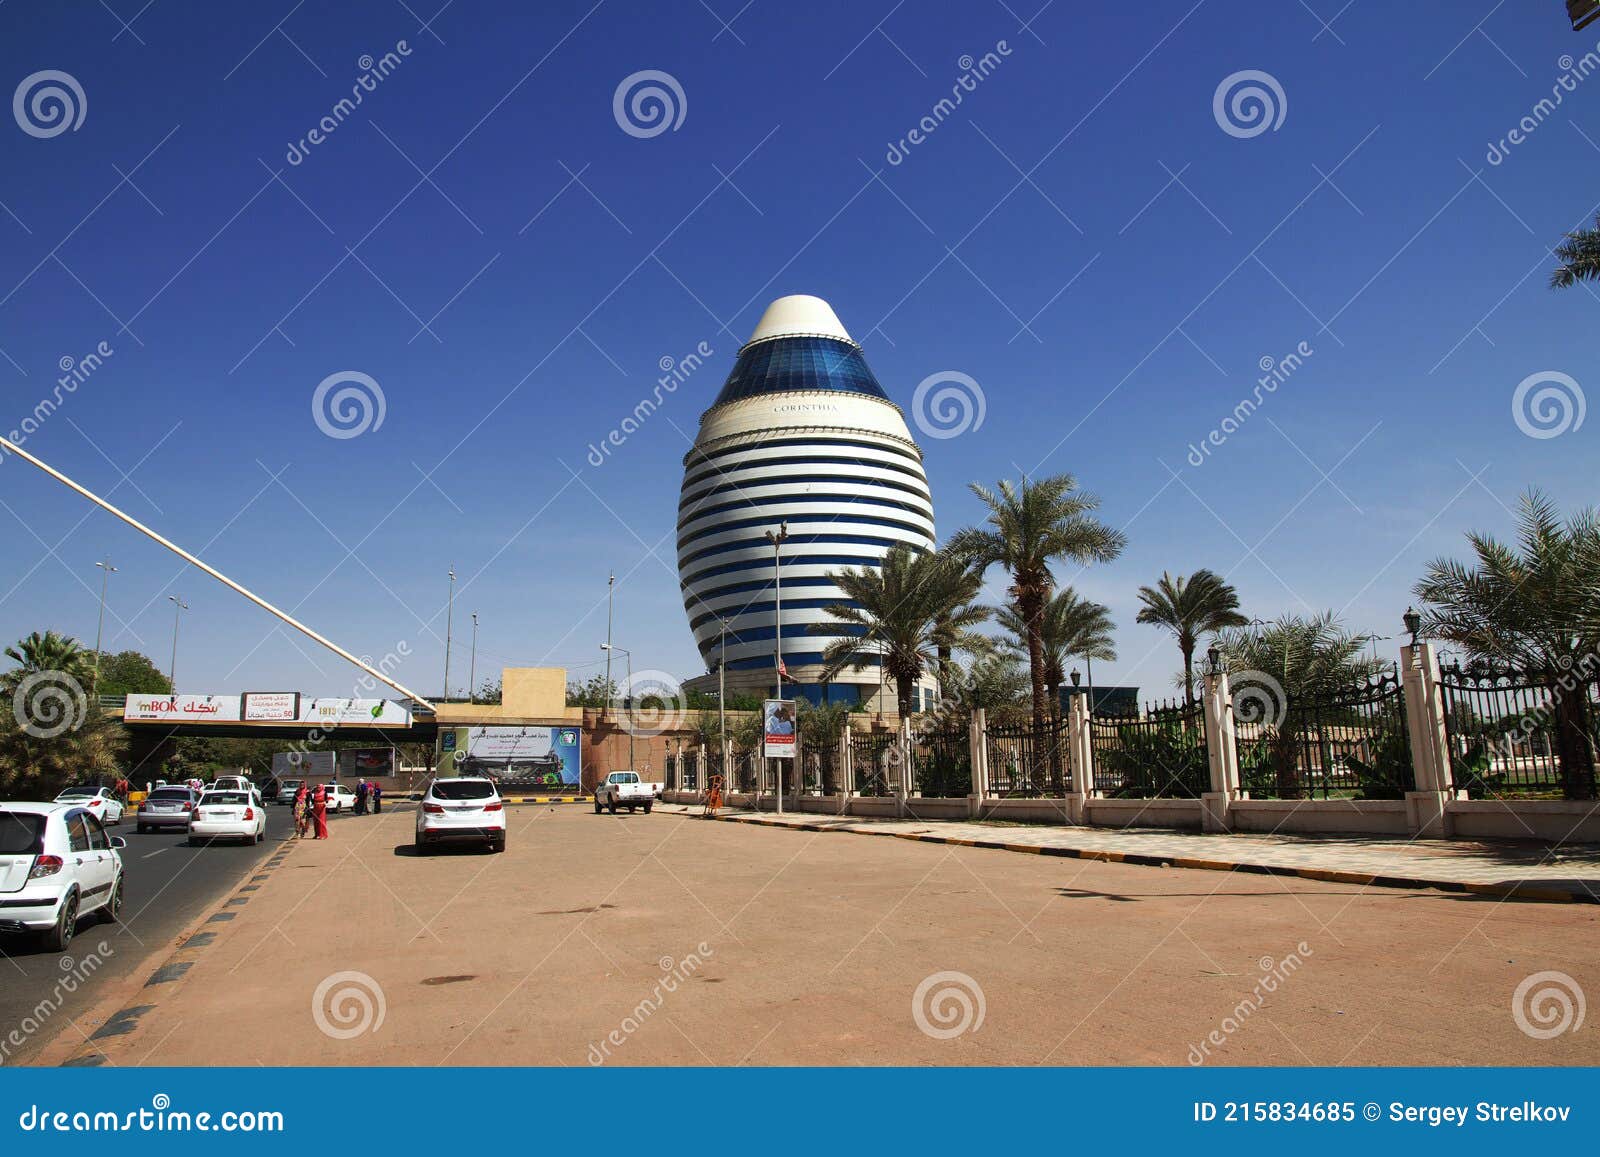 下一站去哪: 齋戒月初體驗-喀土穆 Khartoum